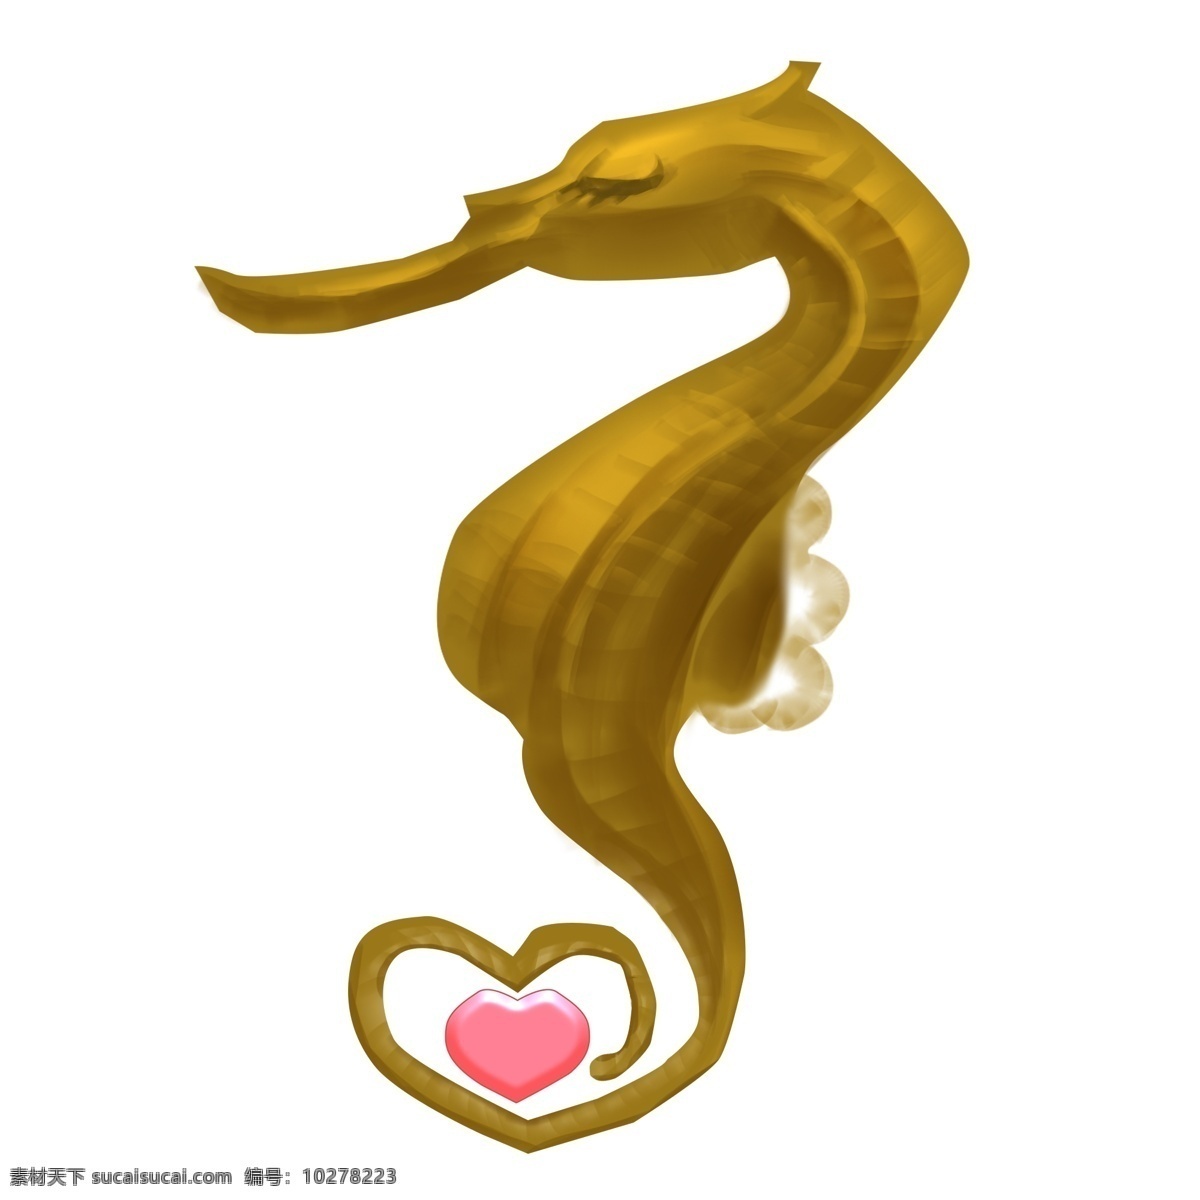 手绘 金色 小海 马 插画 金色的小海马 红色心形 心形尾巴 创意小海马 海底生物 创意海马 卡通海马